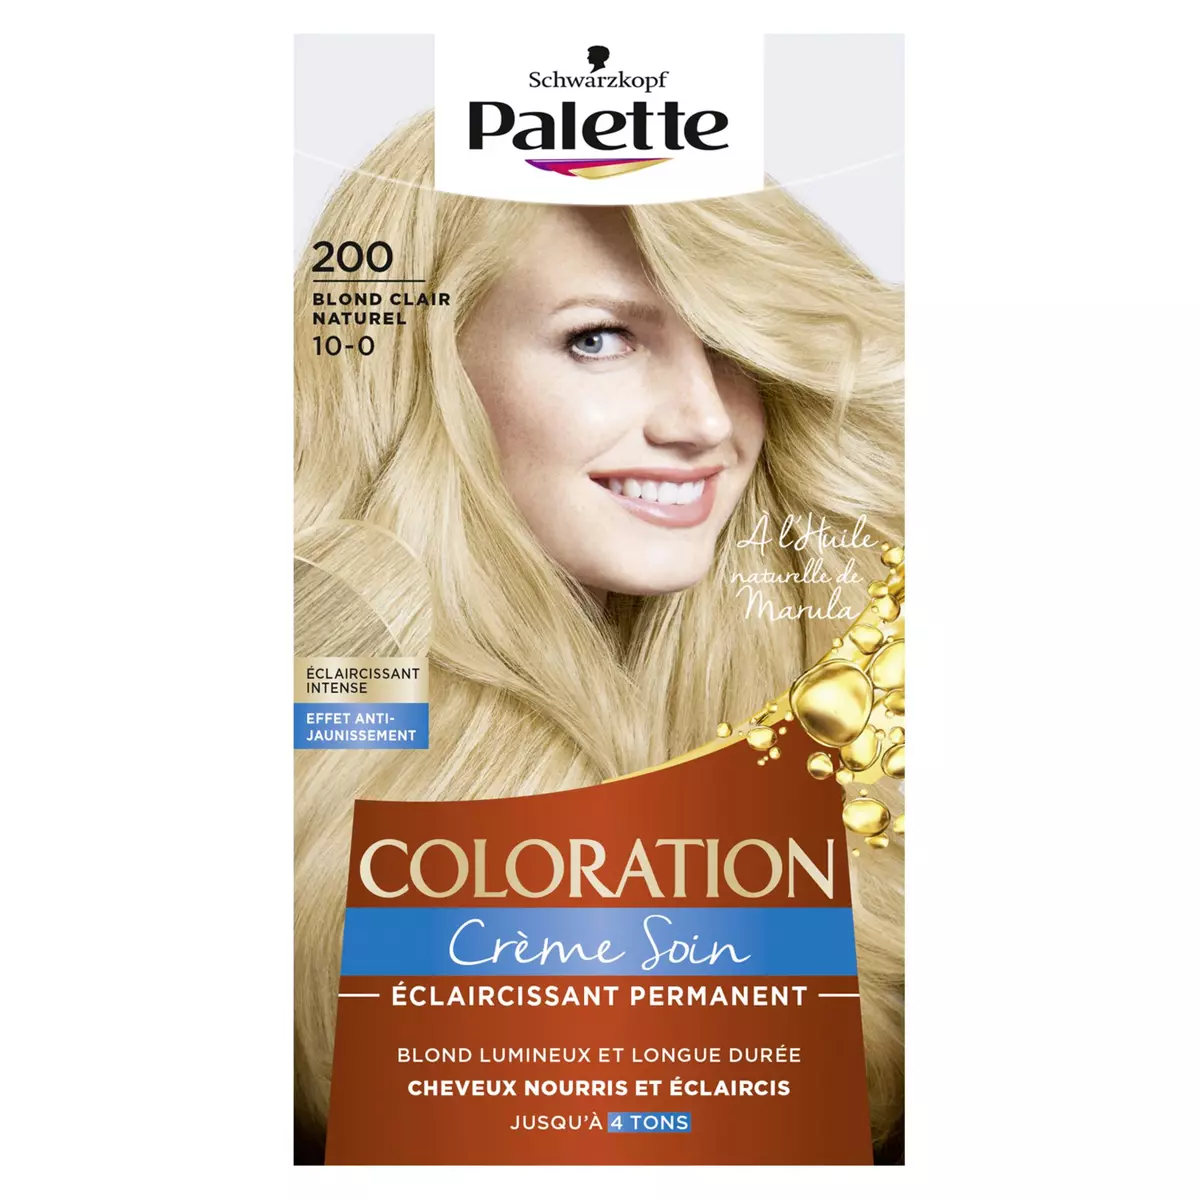 PALETTE Coloration crème soin éclaircissante 200 blond clair naturel 3 produits 1 kit